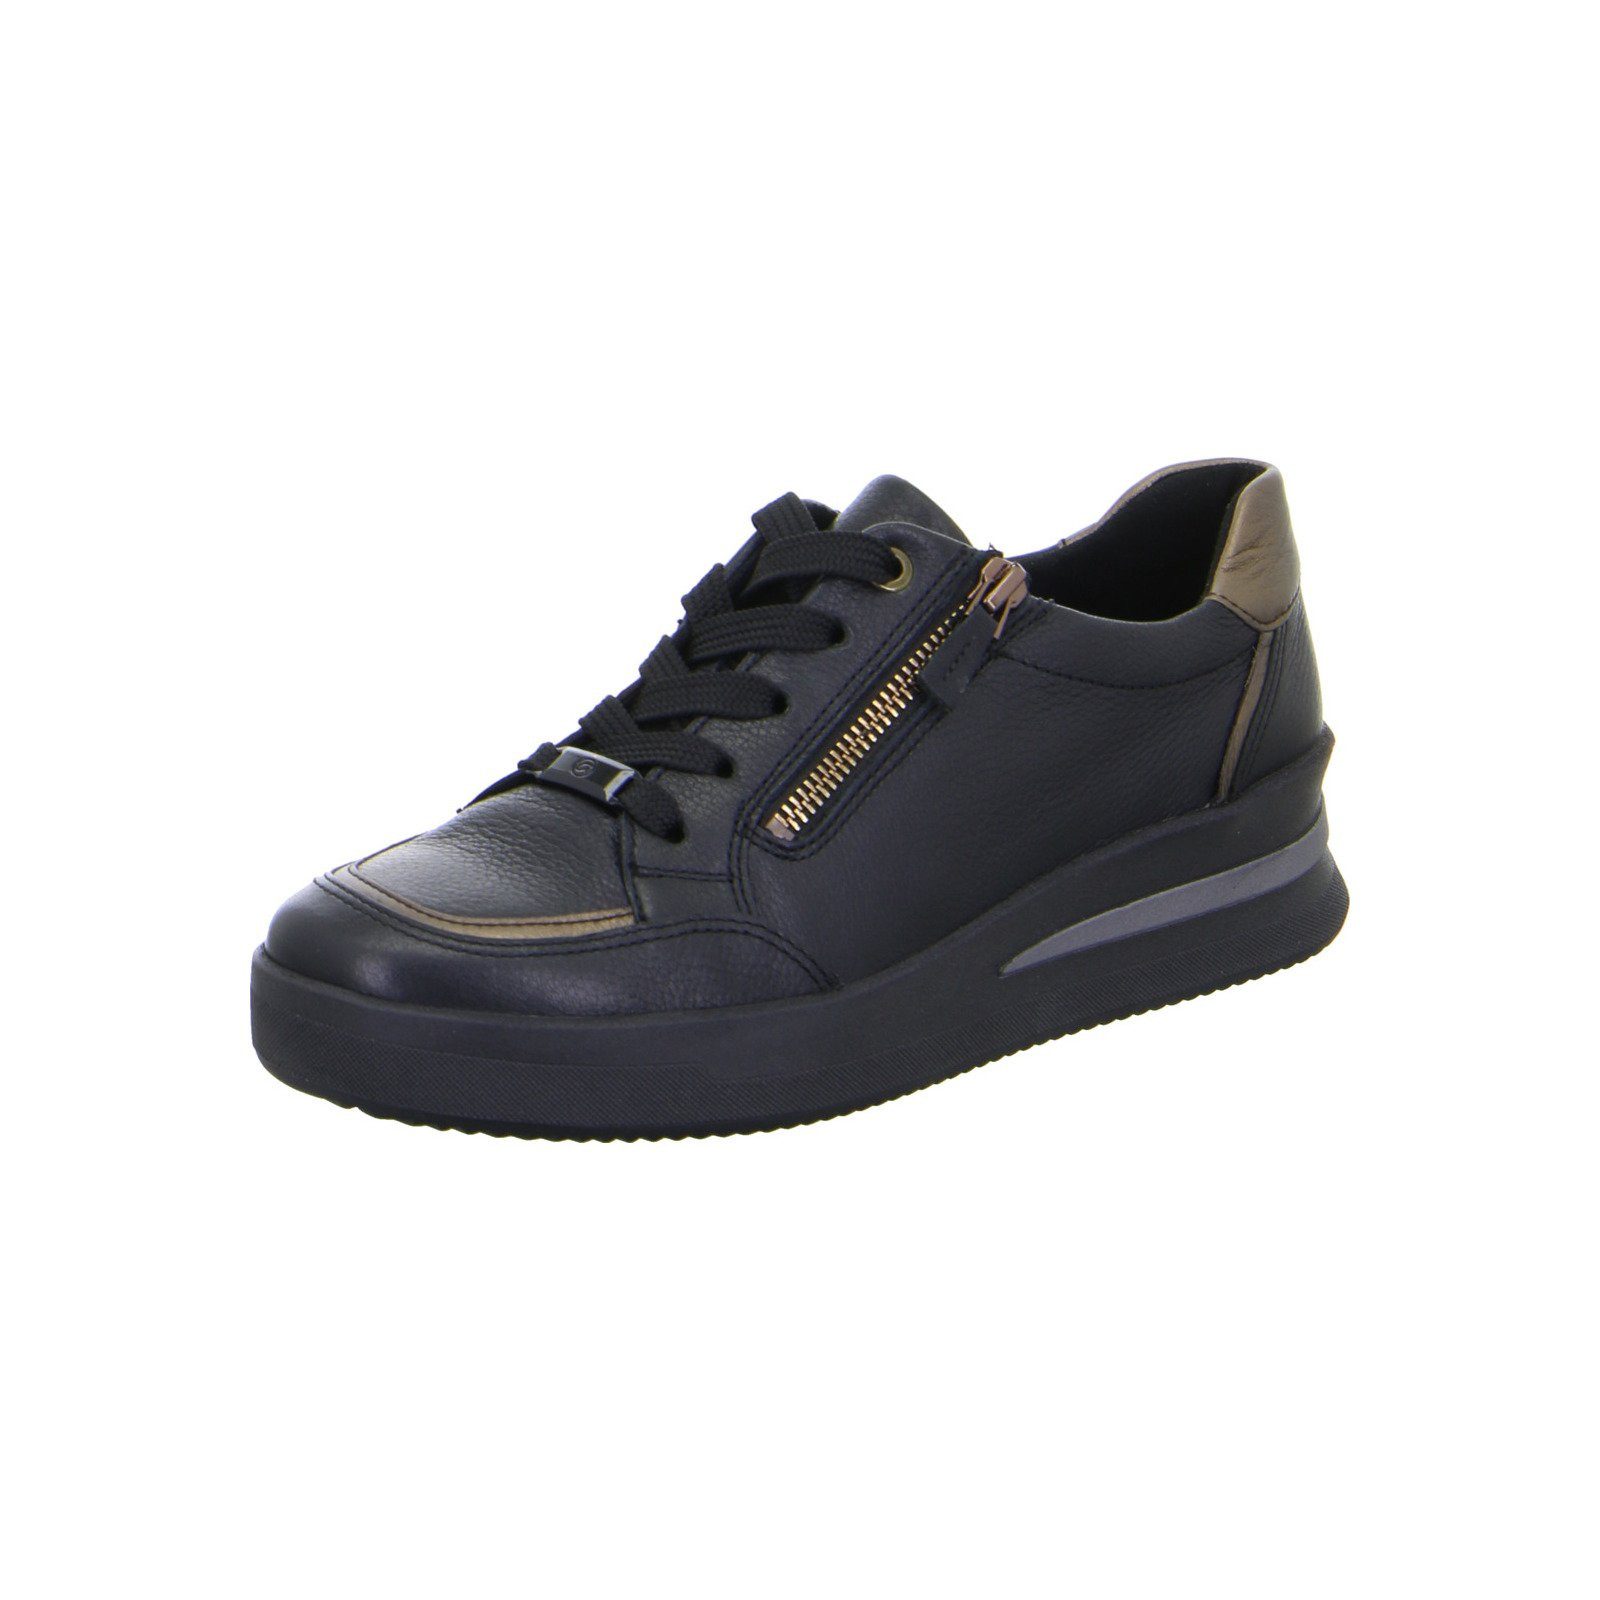 Ara Lazio - Damen Schuhe Schnürschuh Sneaker Glattleder schwarz